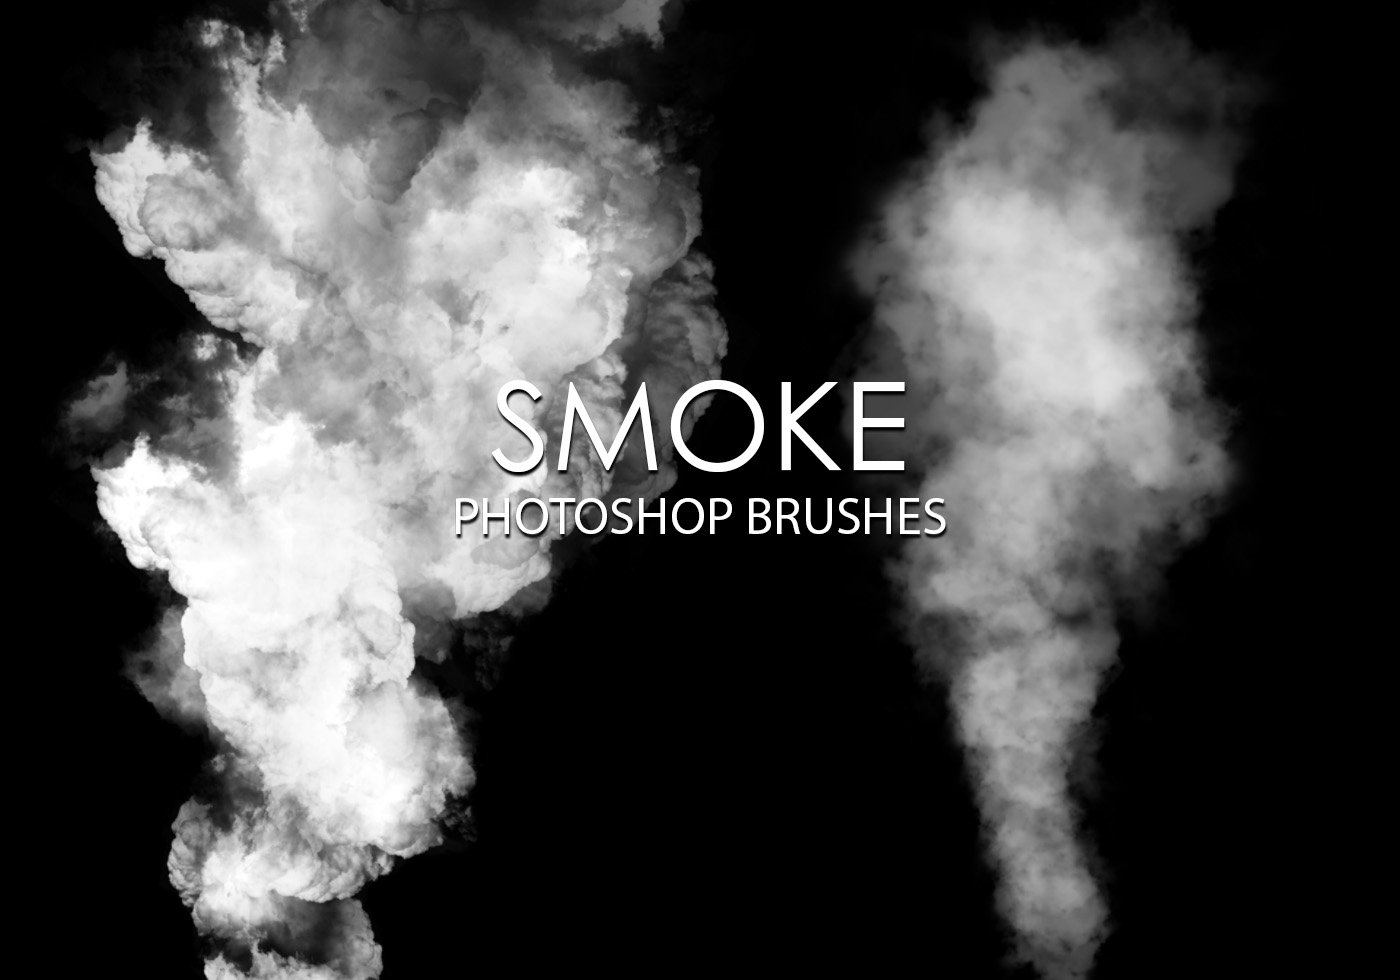 Free smoke brushes for photoshop